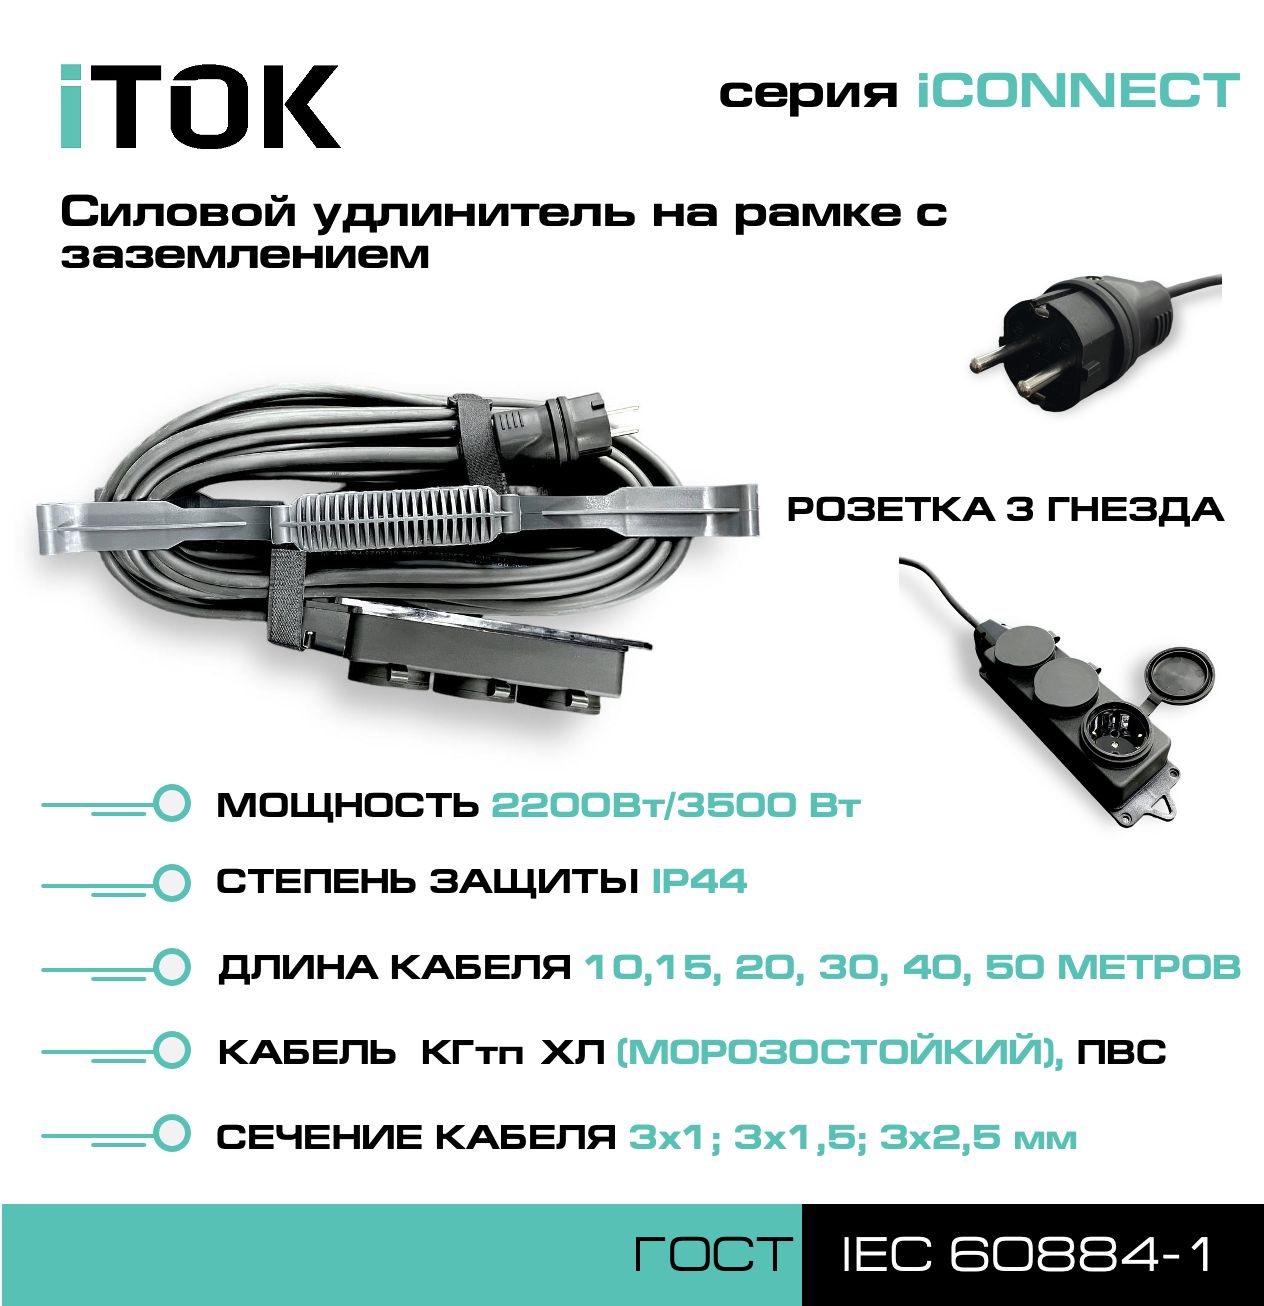 Удлинитель на рамке с заземлением серии iTOK iCONNECT ПВС 3х2,5 мм 3 гнезда IP44 15 м зарядные гнезда usb в виде клавиши marina 4 8 а more 10264237